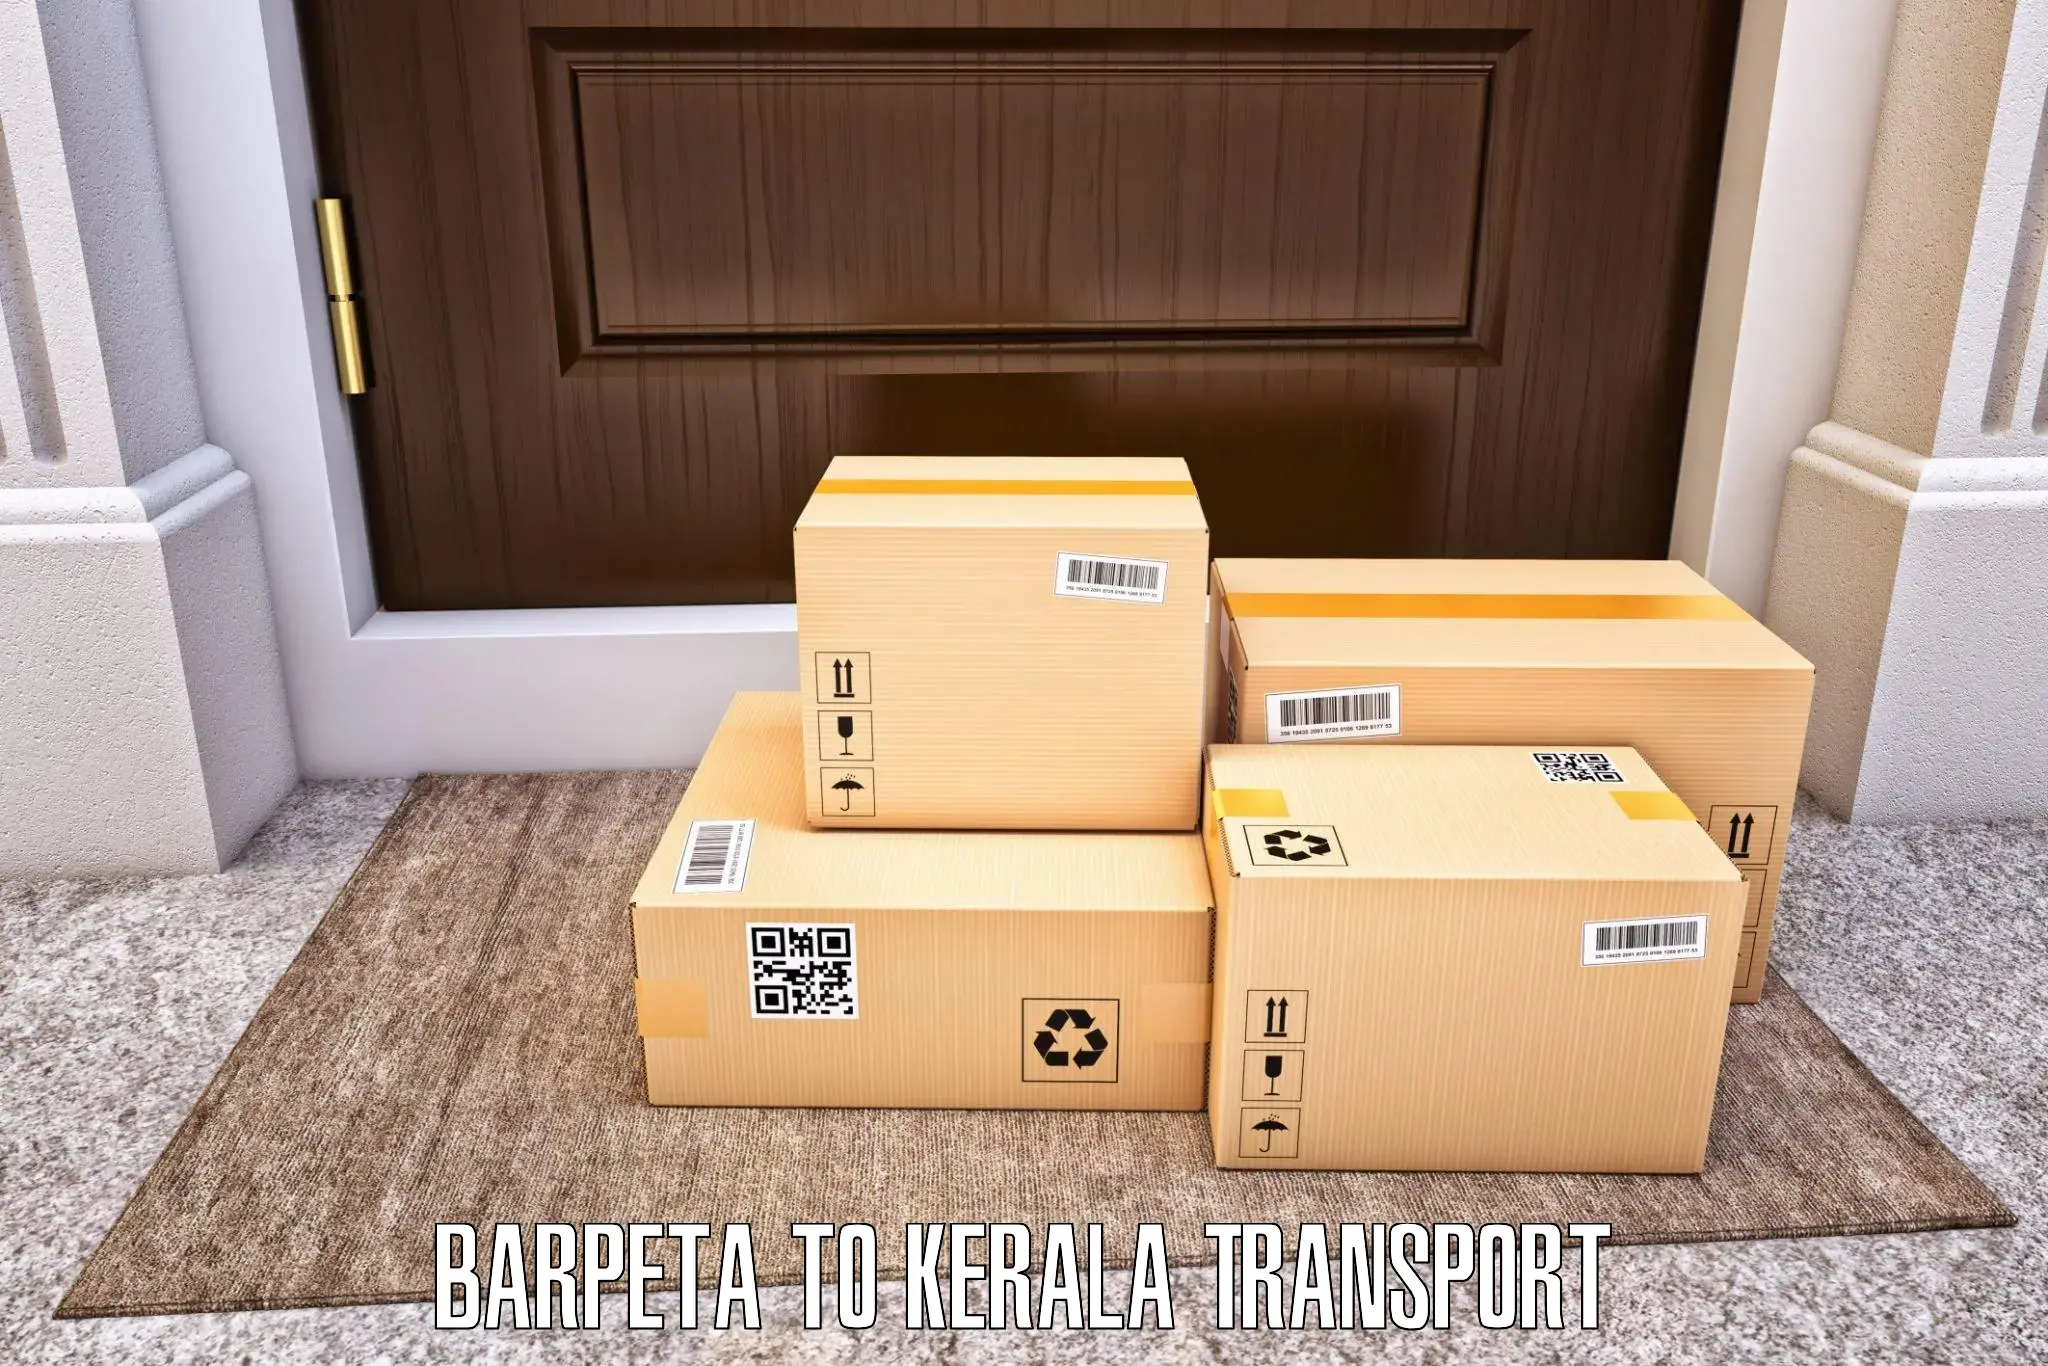 Cargo transport services Barpeta to Taliparamba